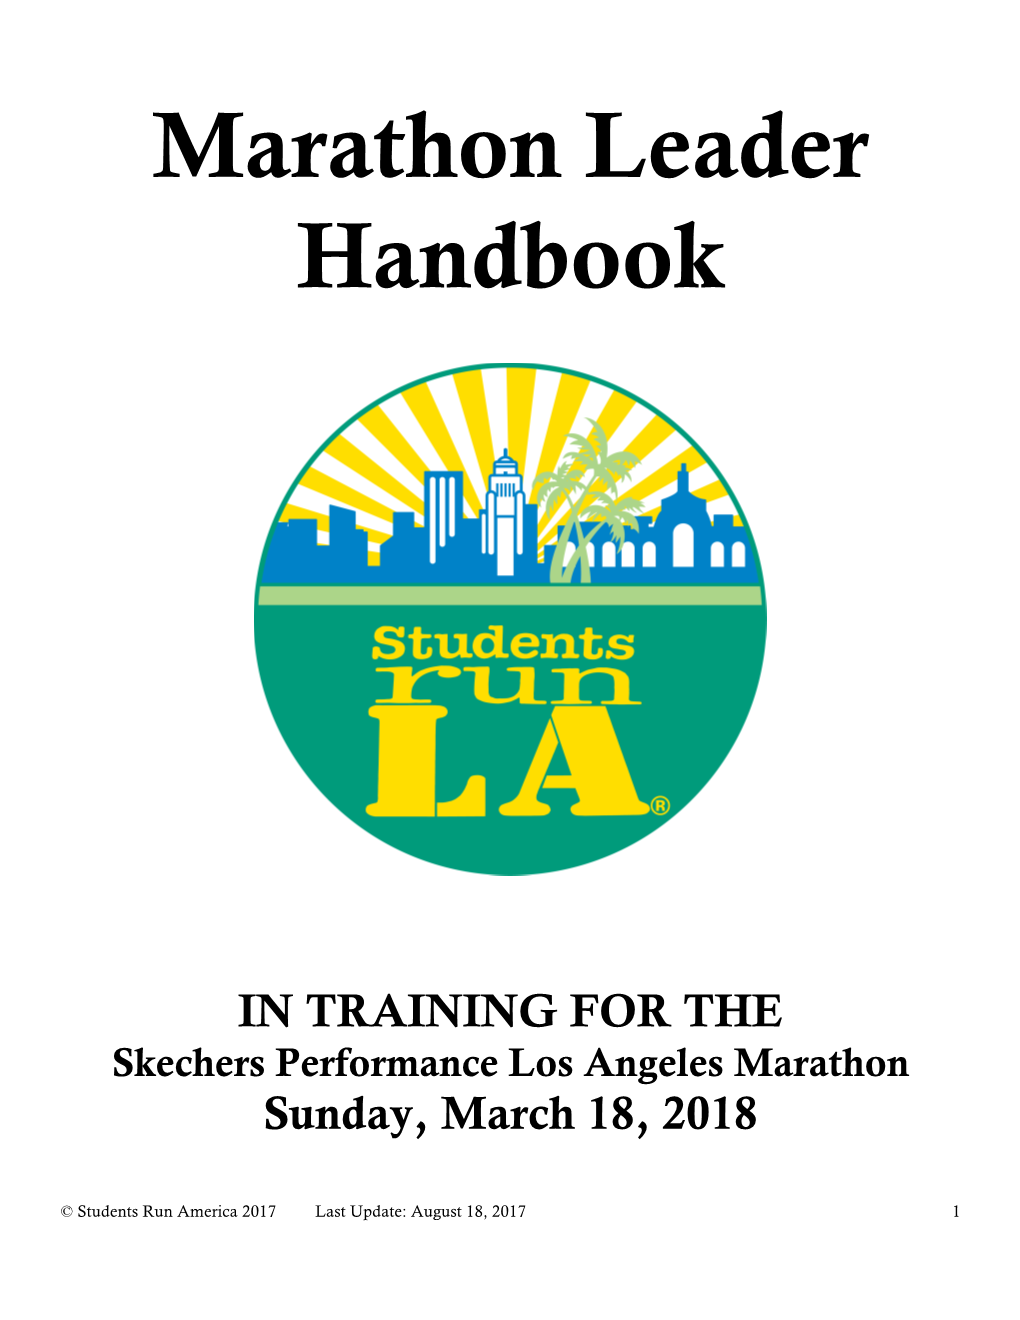 Marathon Leader Handbook 2017-2018 V2